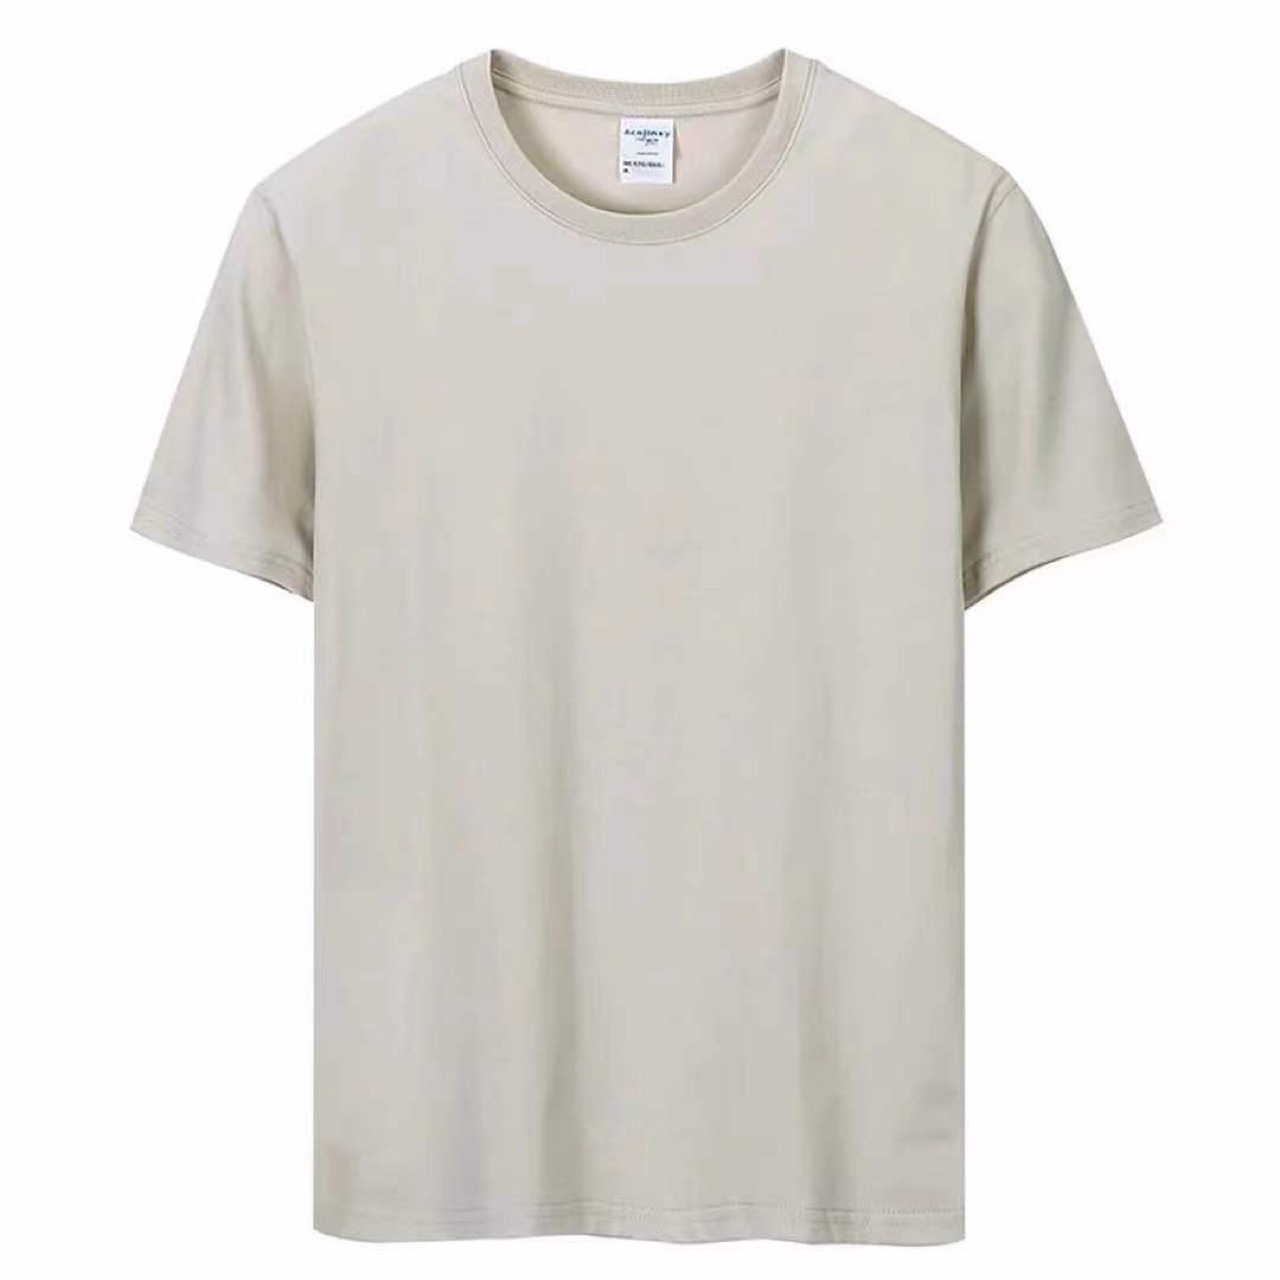 厂家直销高品质CVC T恤衫广告衫文化衫白胚圆领衫批发短袖t恤